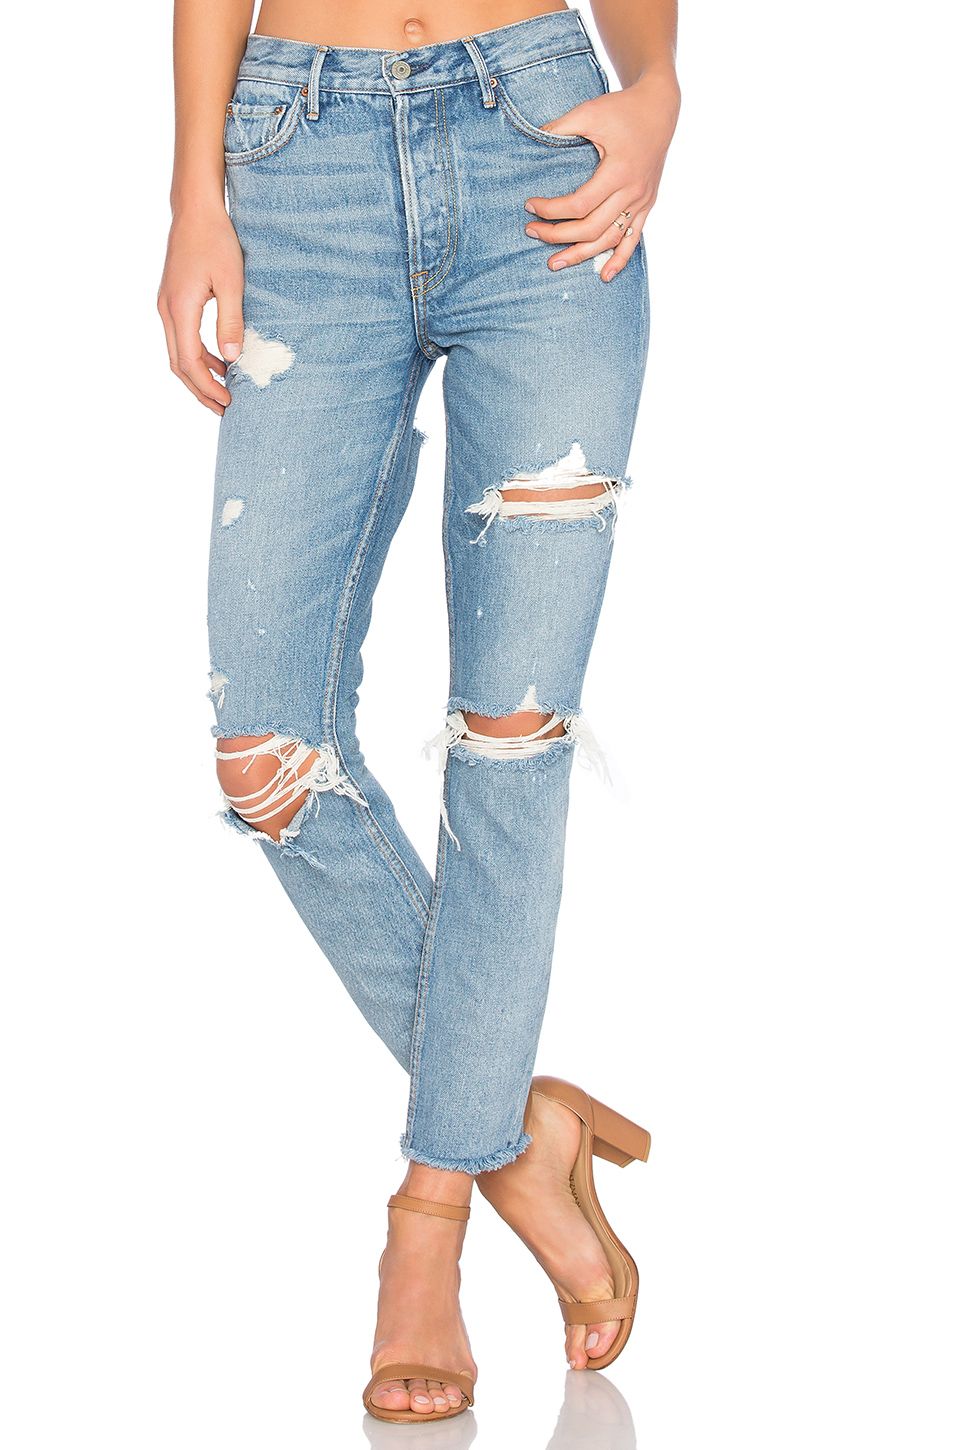 Hier erfahren Sie, wie Sie Kylies zerrissenen Jeans-Look erhalten